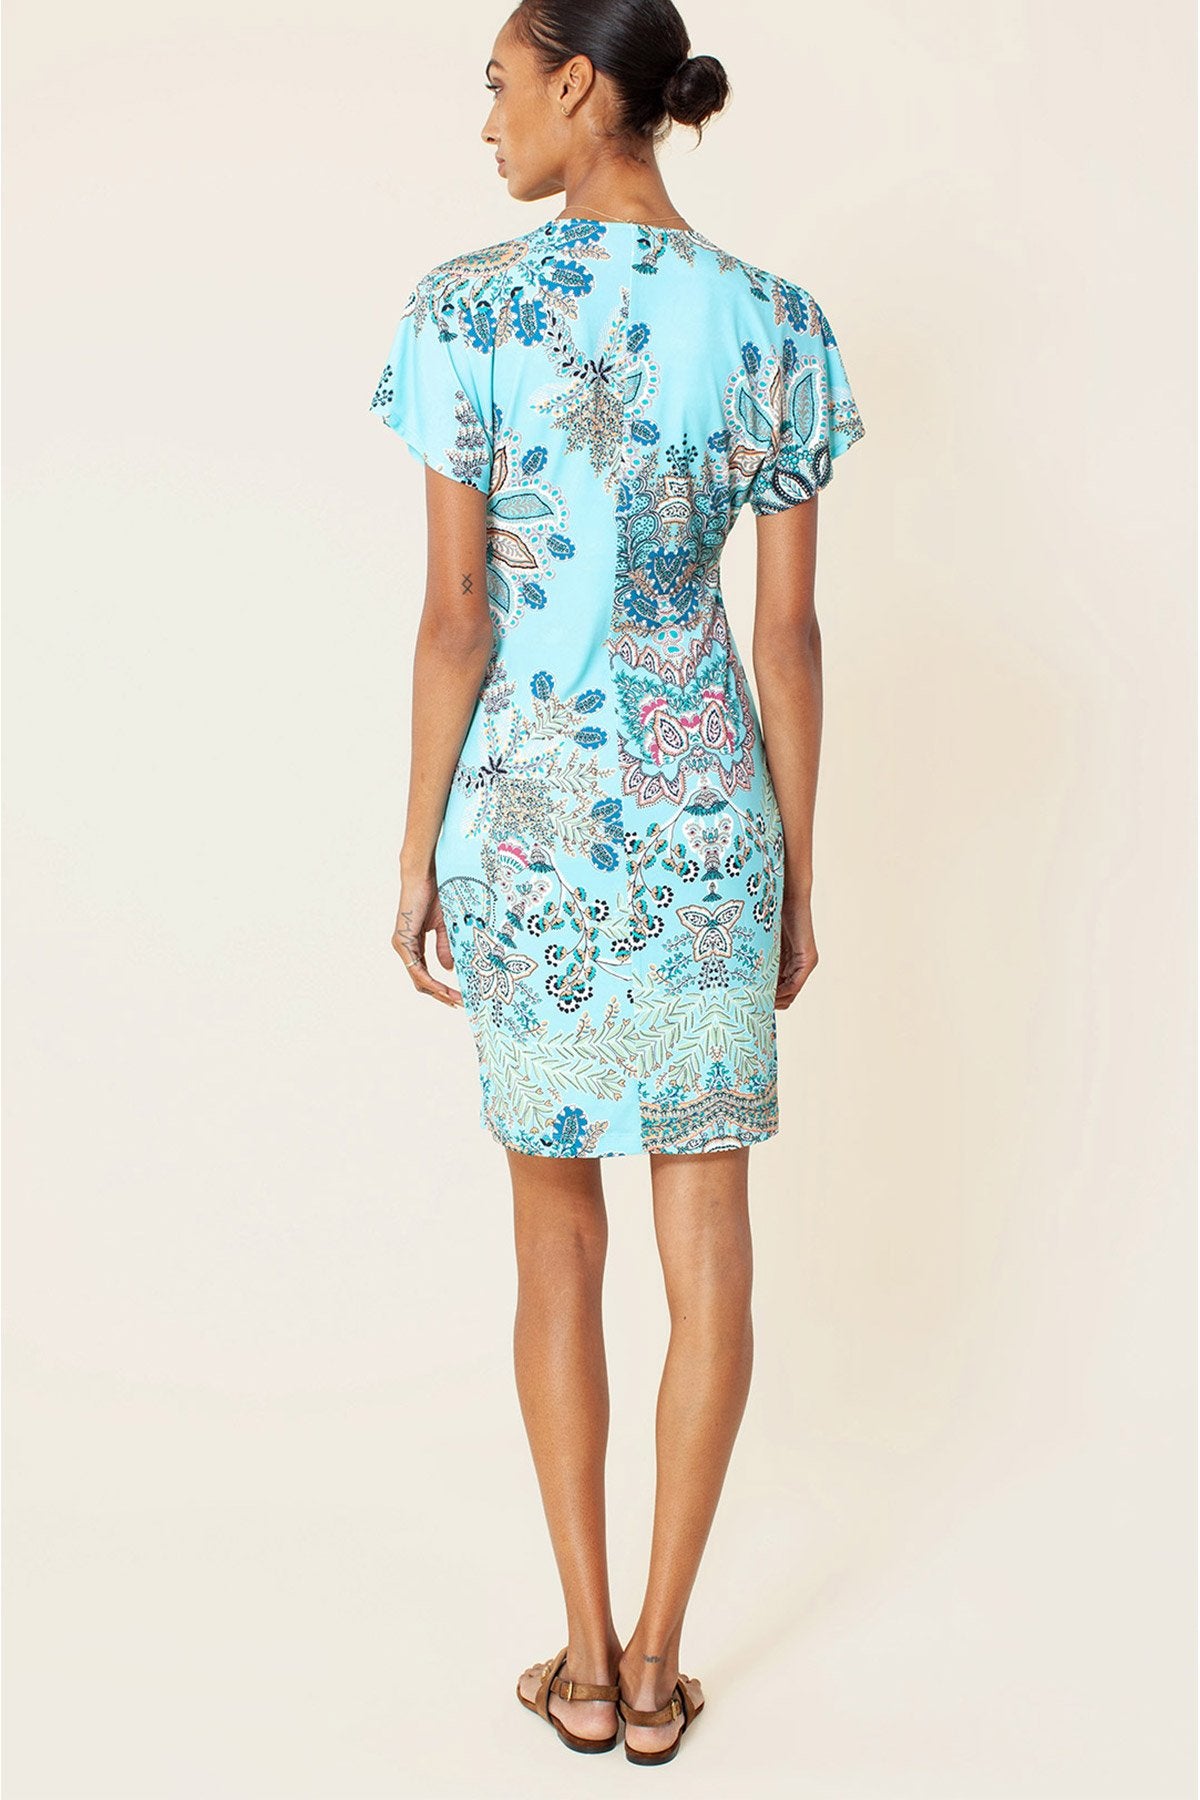 Hale Bob Diz Üstü Elbise-Libas Trendy Fashion Store